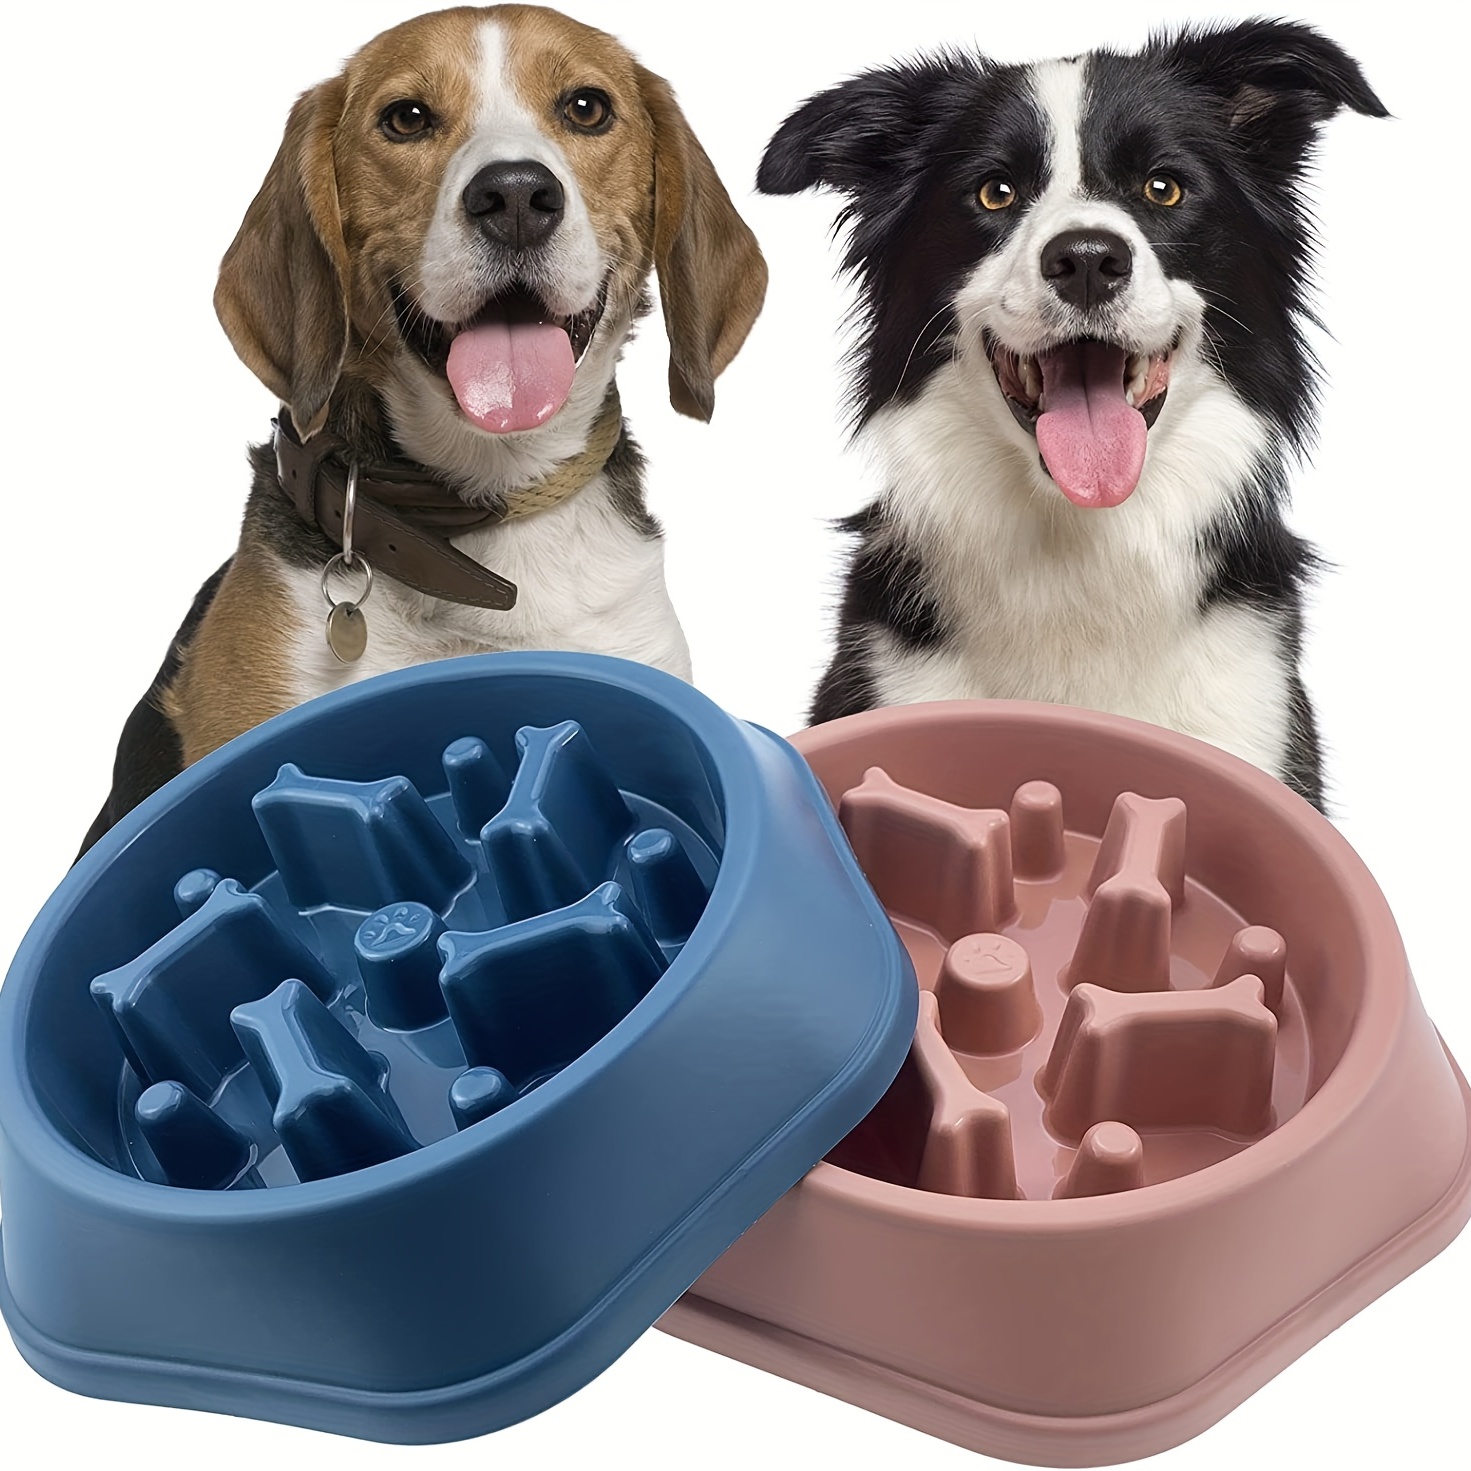 Pet Supplies : Thumberly Slow Feeder Dog Bowl, Anti-chocking